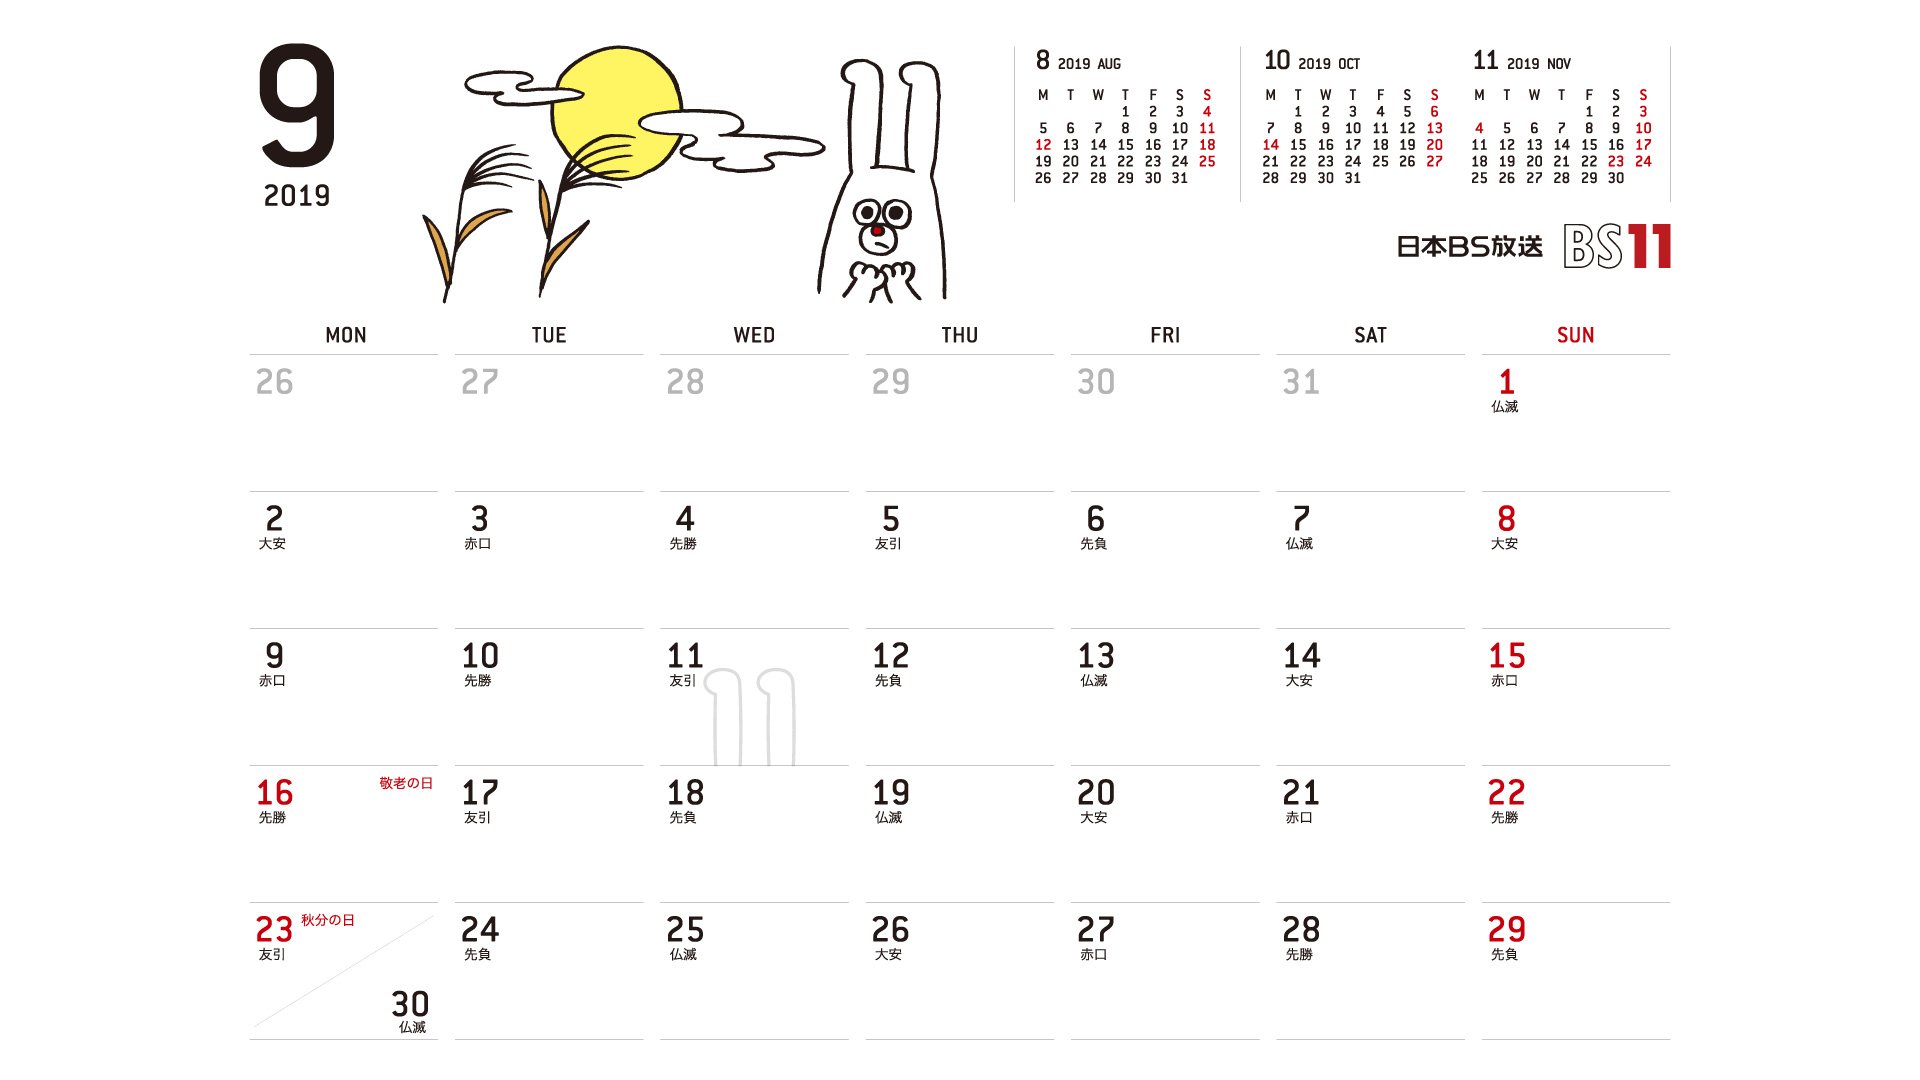 じゅういっちゃんのデジタルカレンダー19年09月 Bs11 イレブン いつでも無料放送